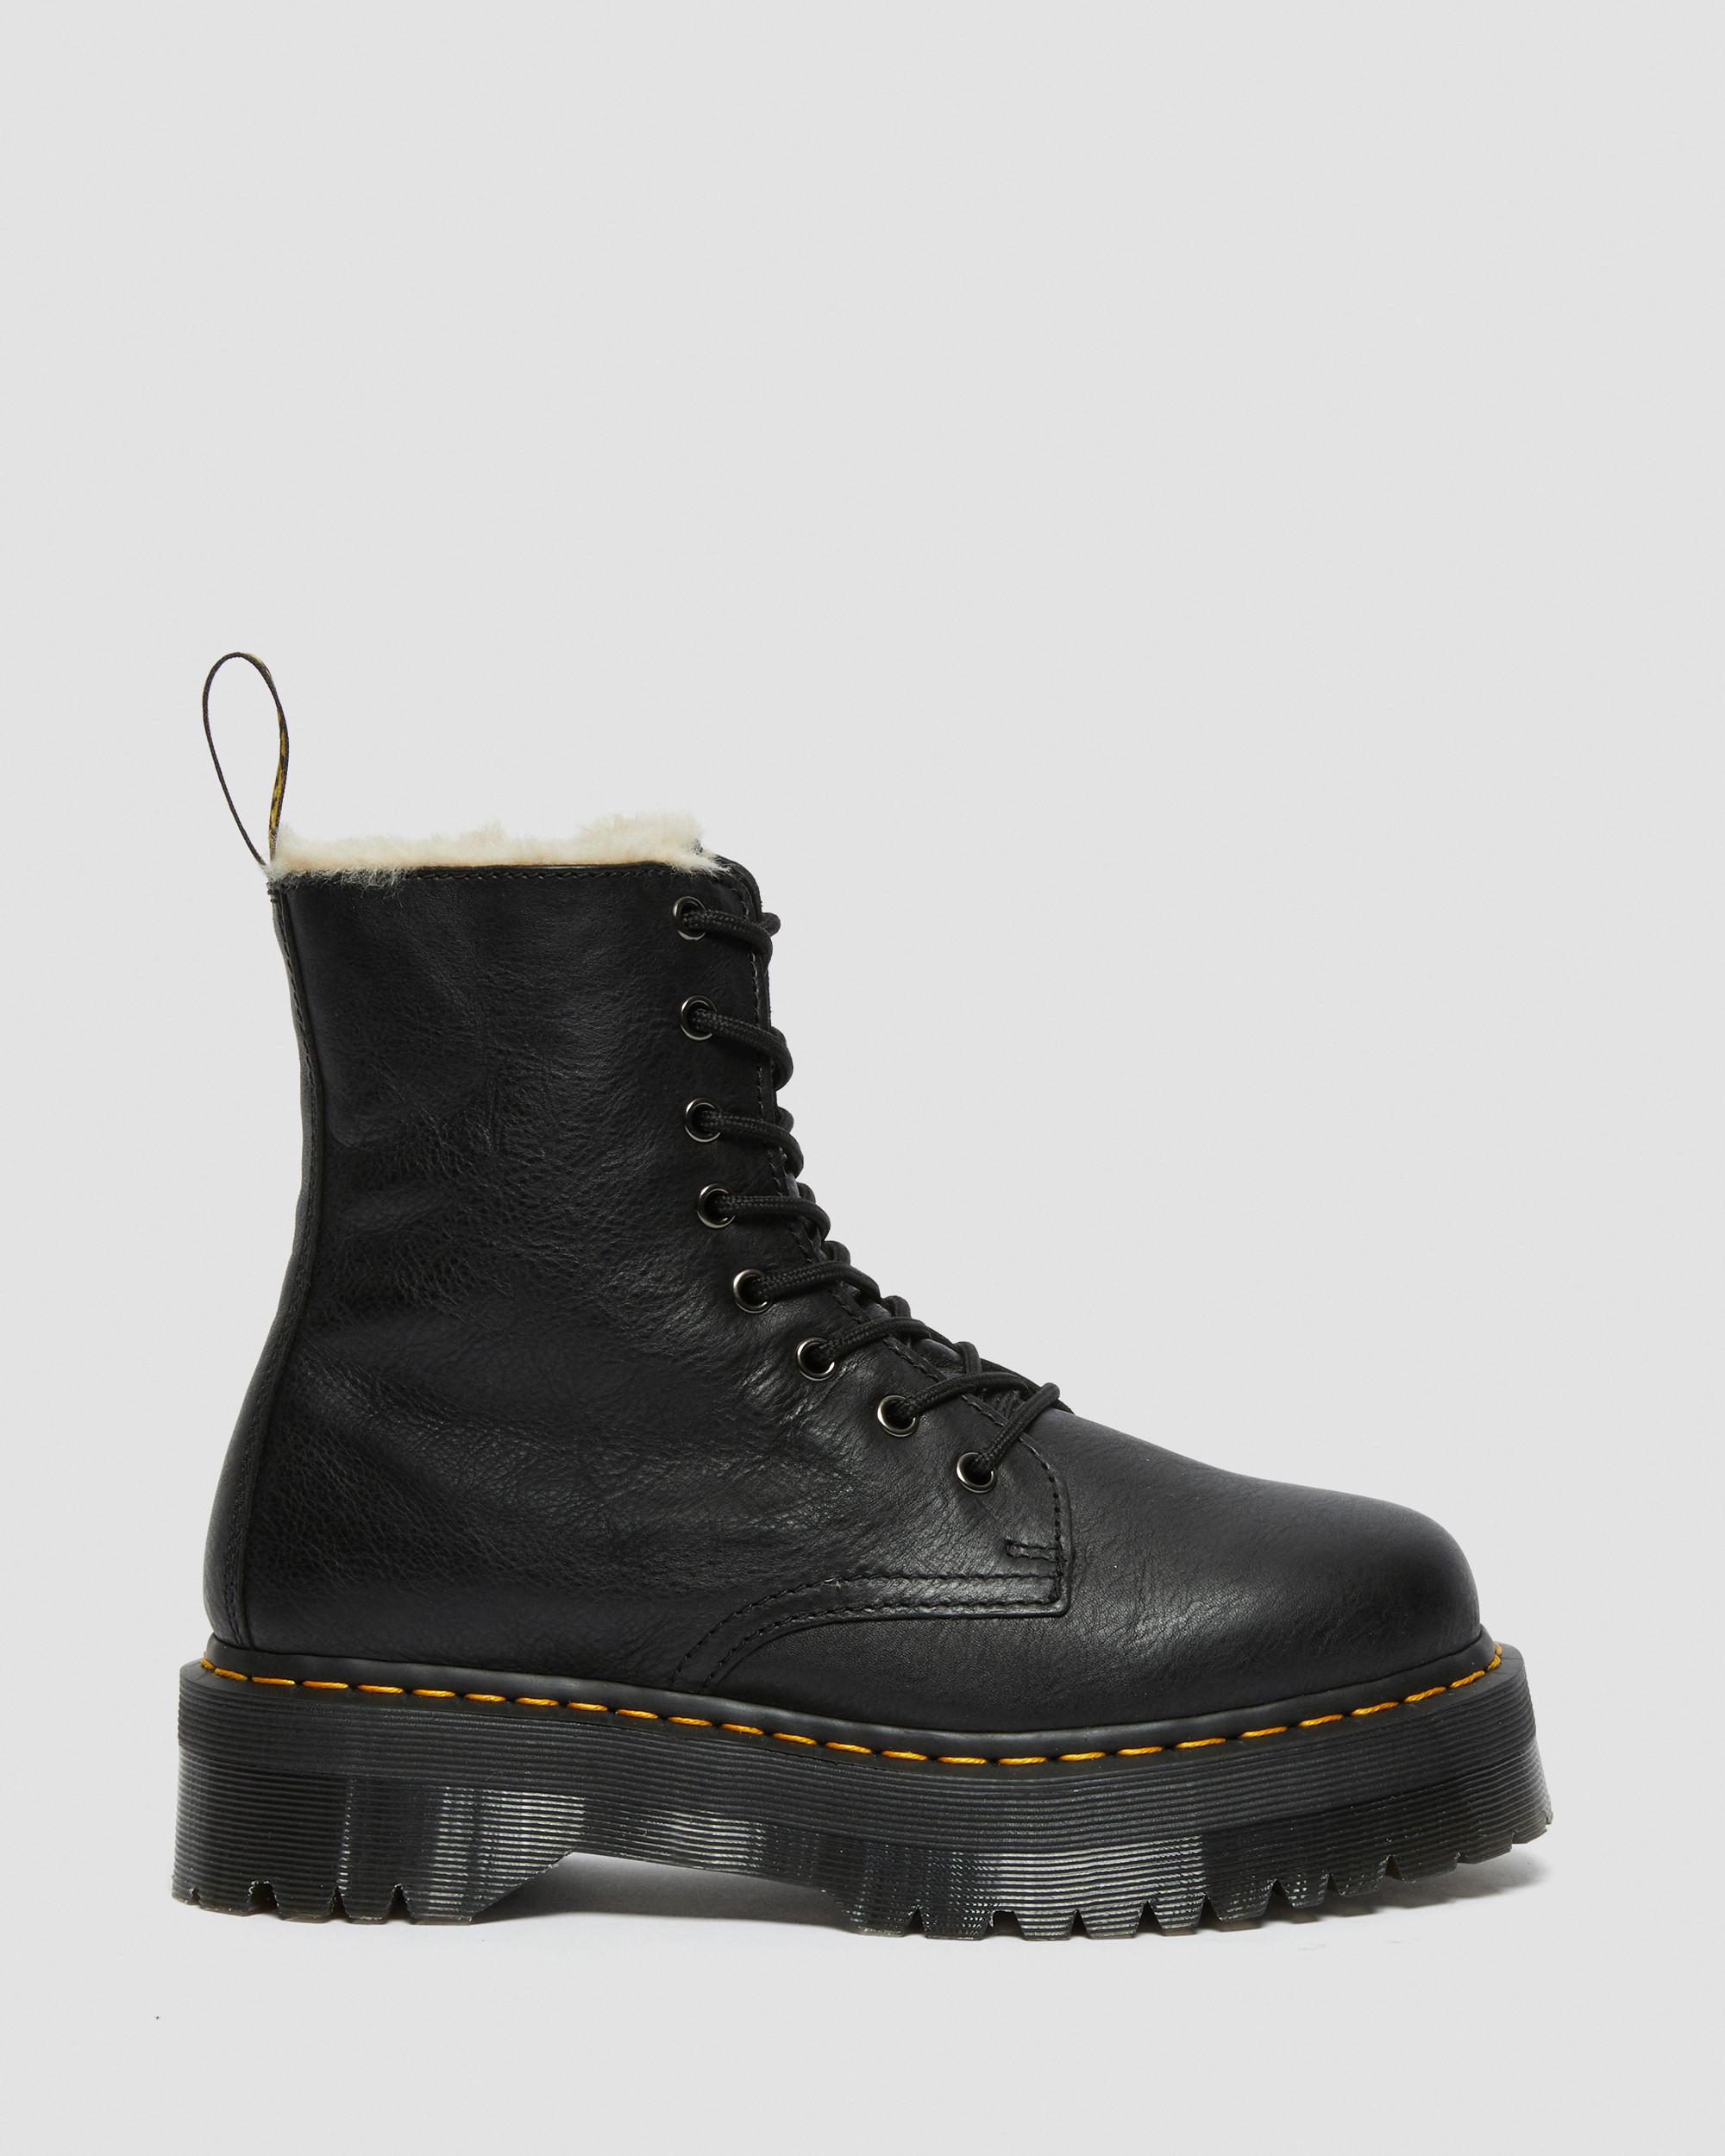 Jadon Boot Leather Faux Fur Lined Platforms, Black | Dr. Martens